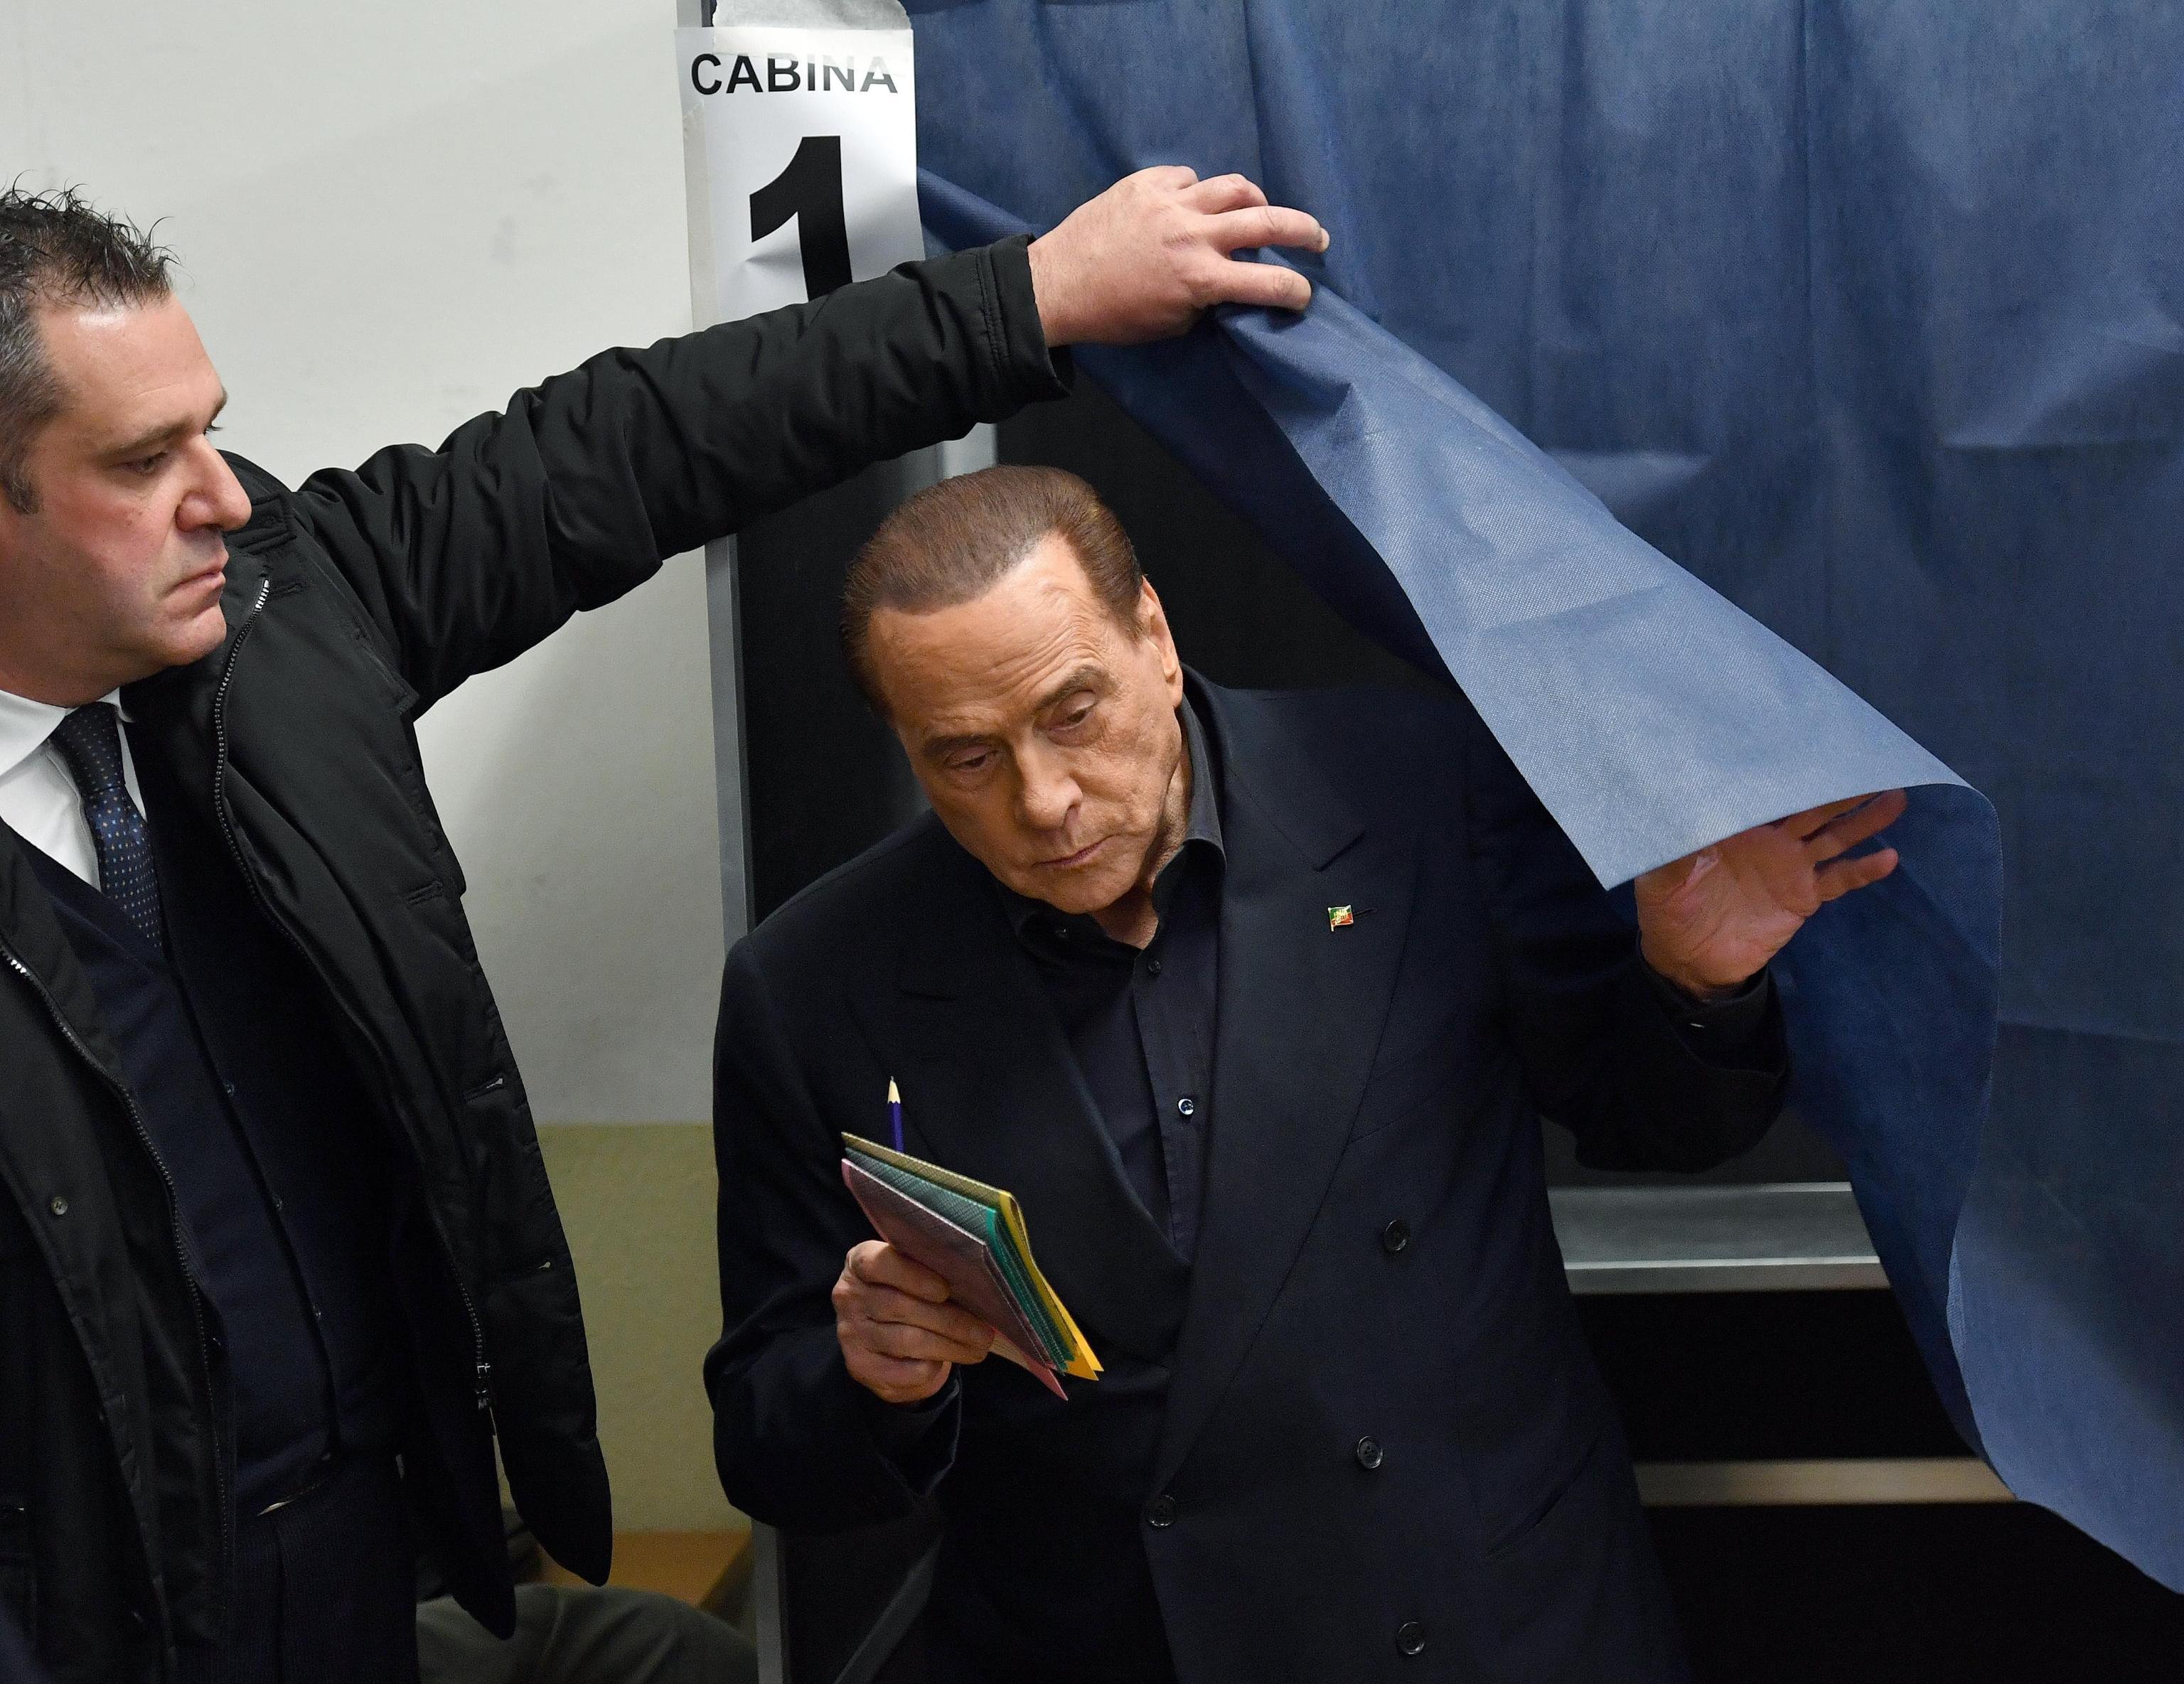 Coligação de direitas de Berlusconi perfila-se como vencedora das eleições italianas